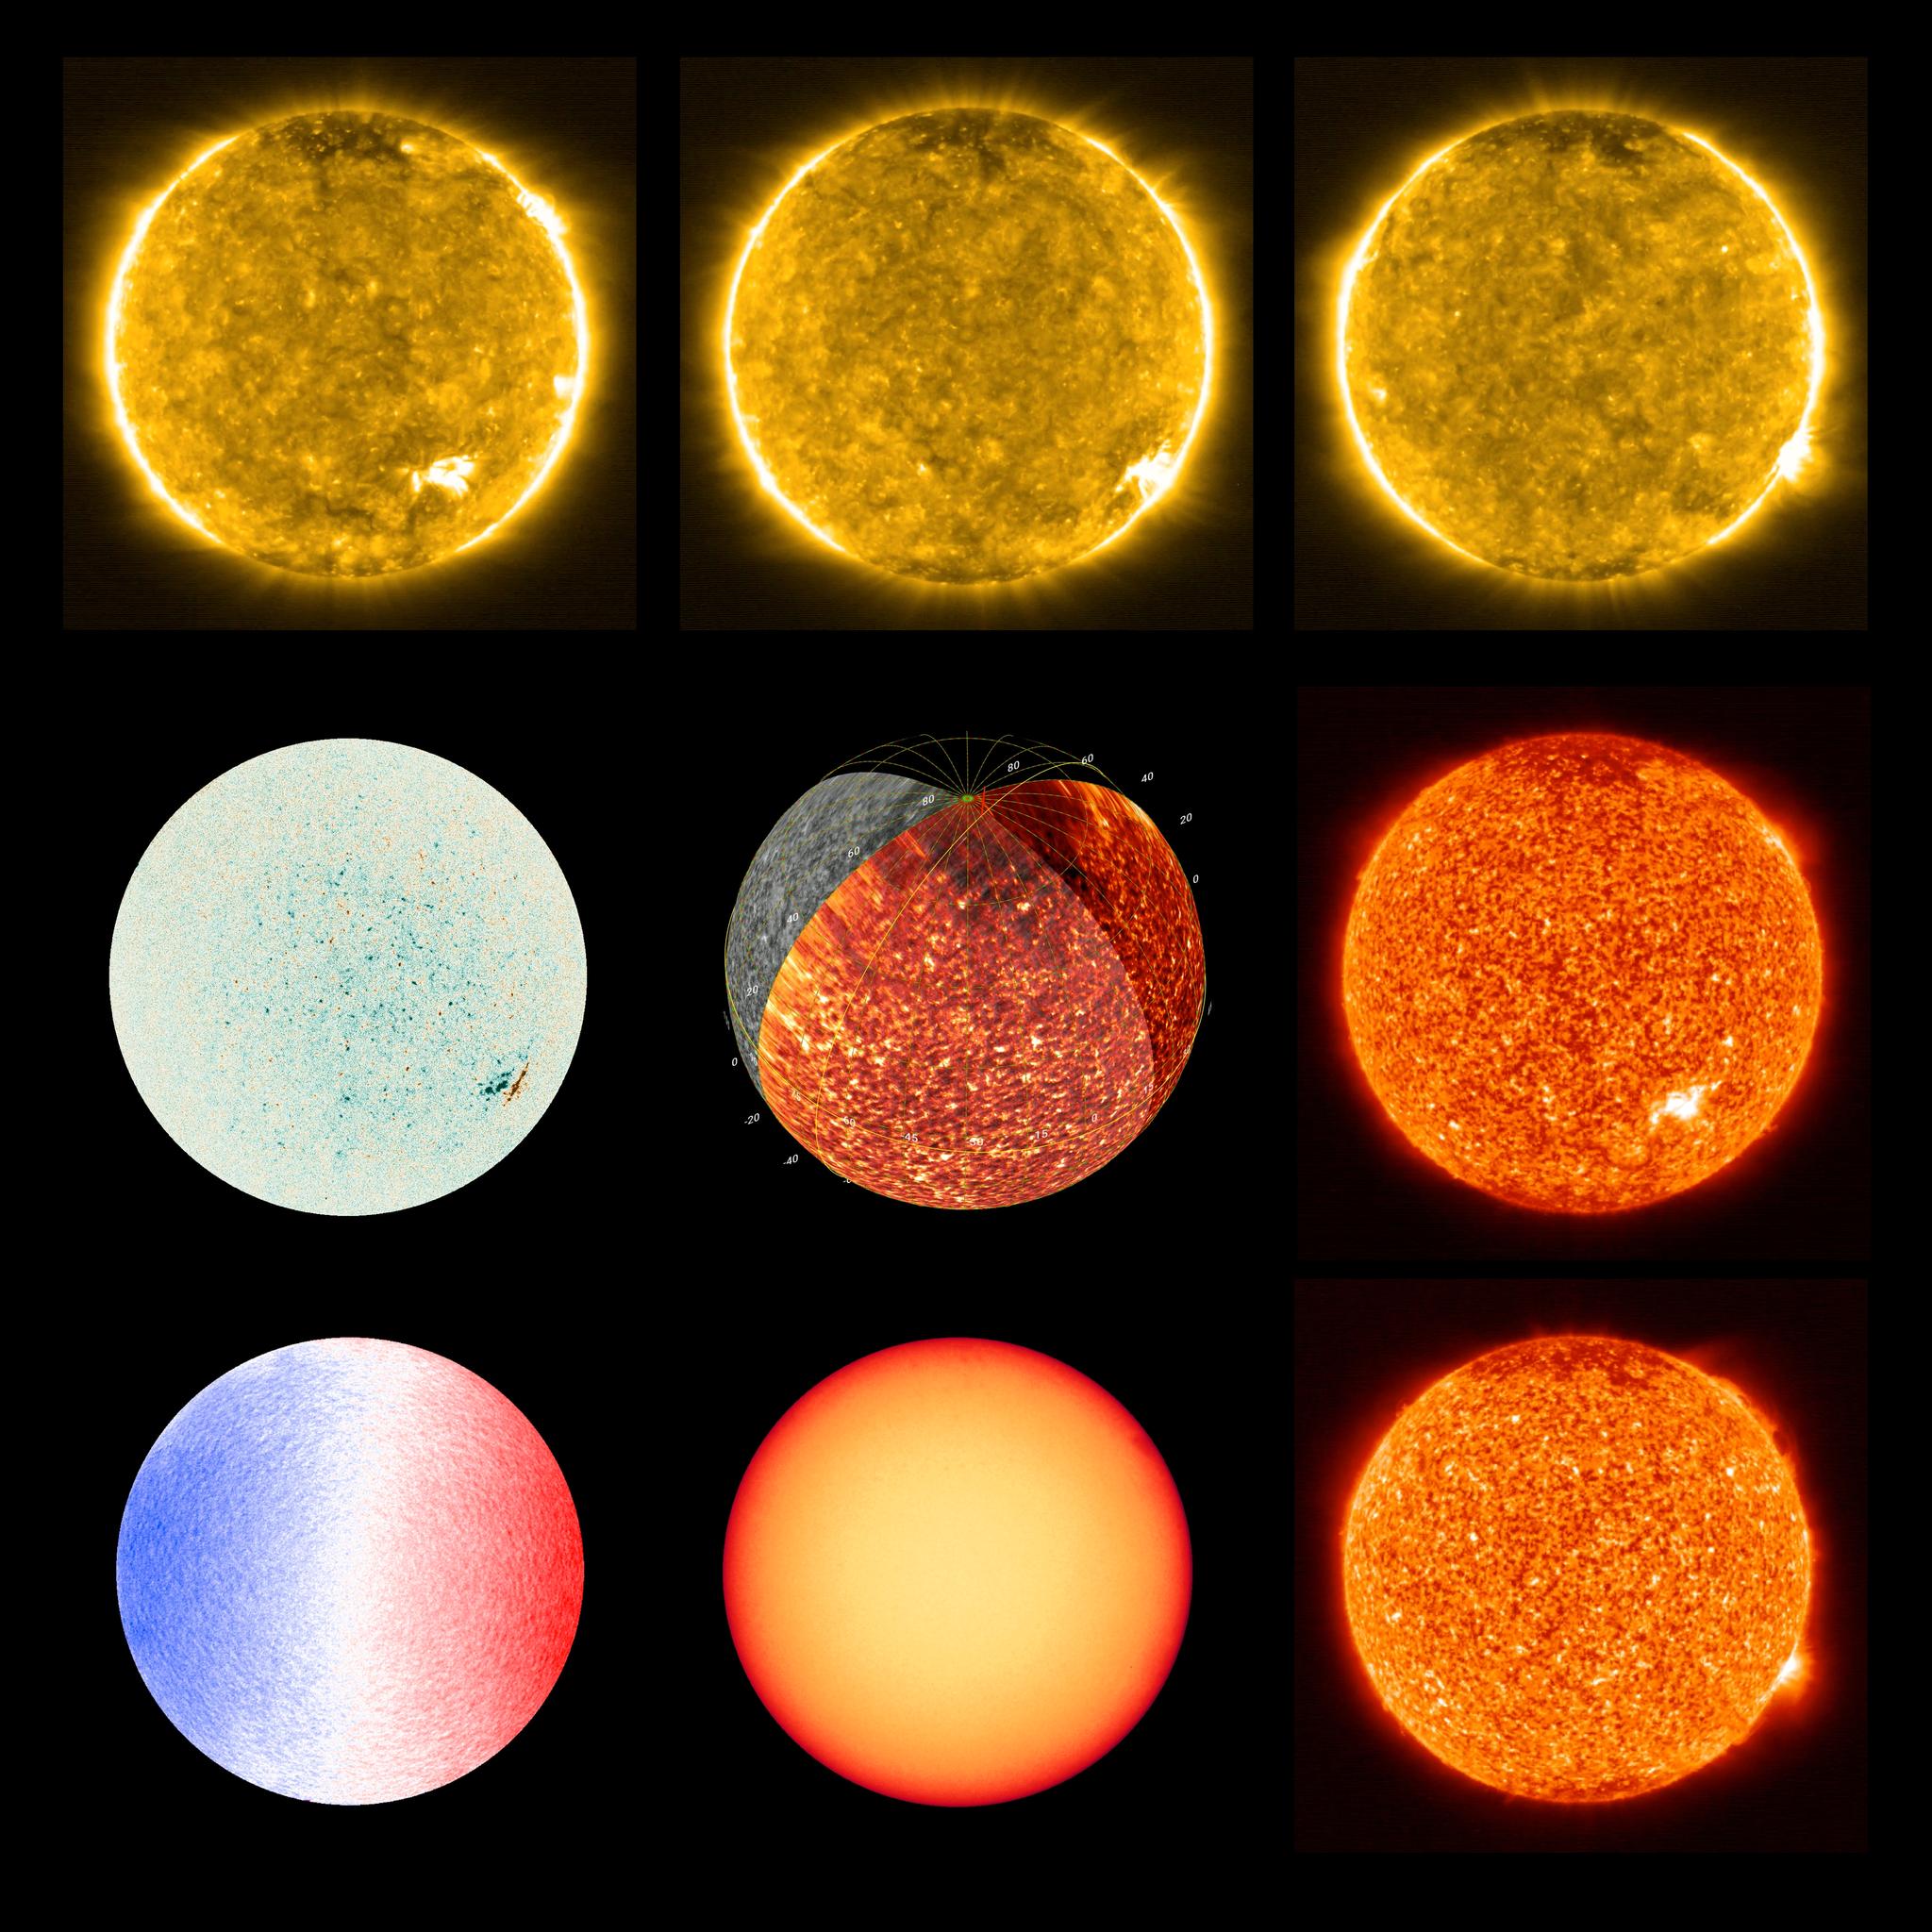 Hvert bilde er en puslespillbit. Til sammen skal de ulike bitene hjelpe forskerne å danne seg et mer helhetlig og forståelig bilde av solen.